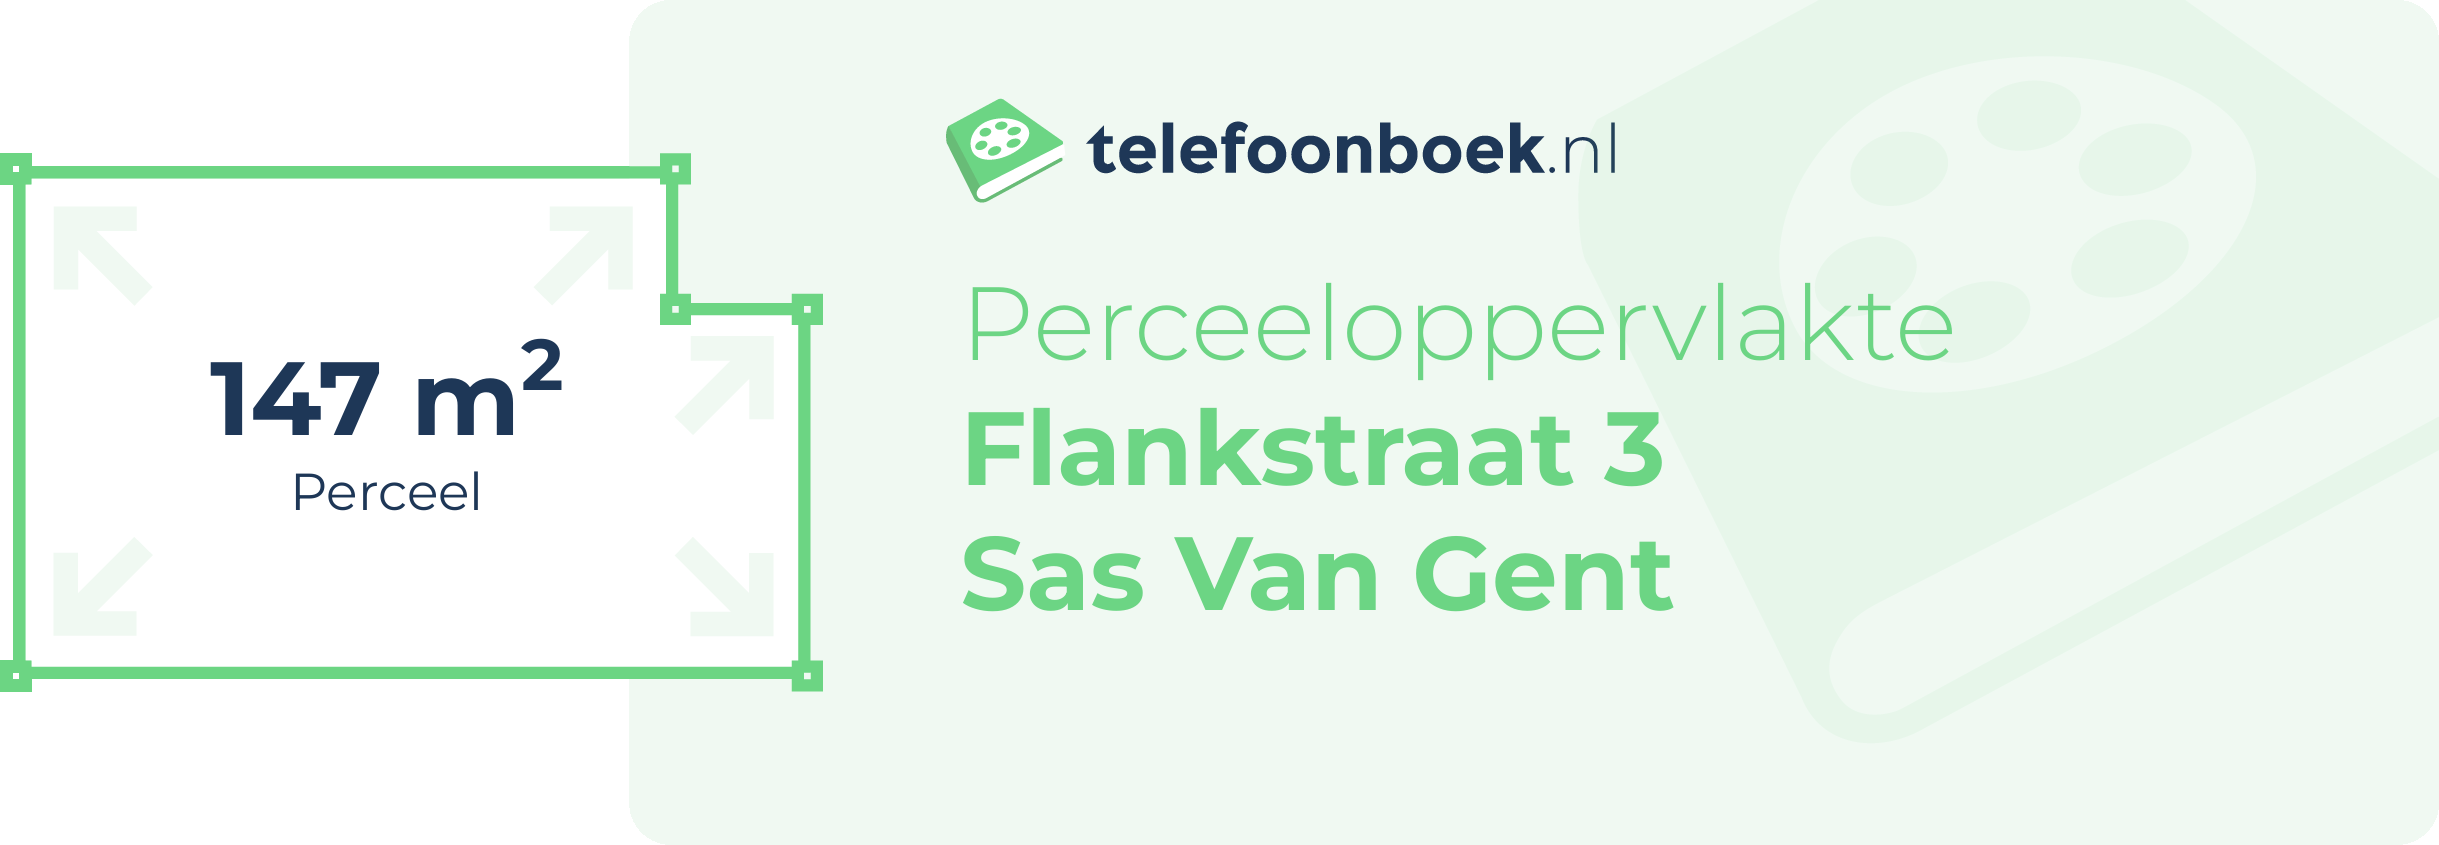 Perceeloppervlakte Flankstraat 3 Sas Van Gent